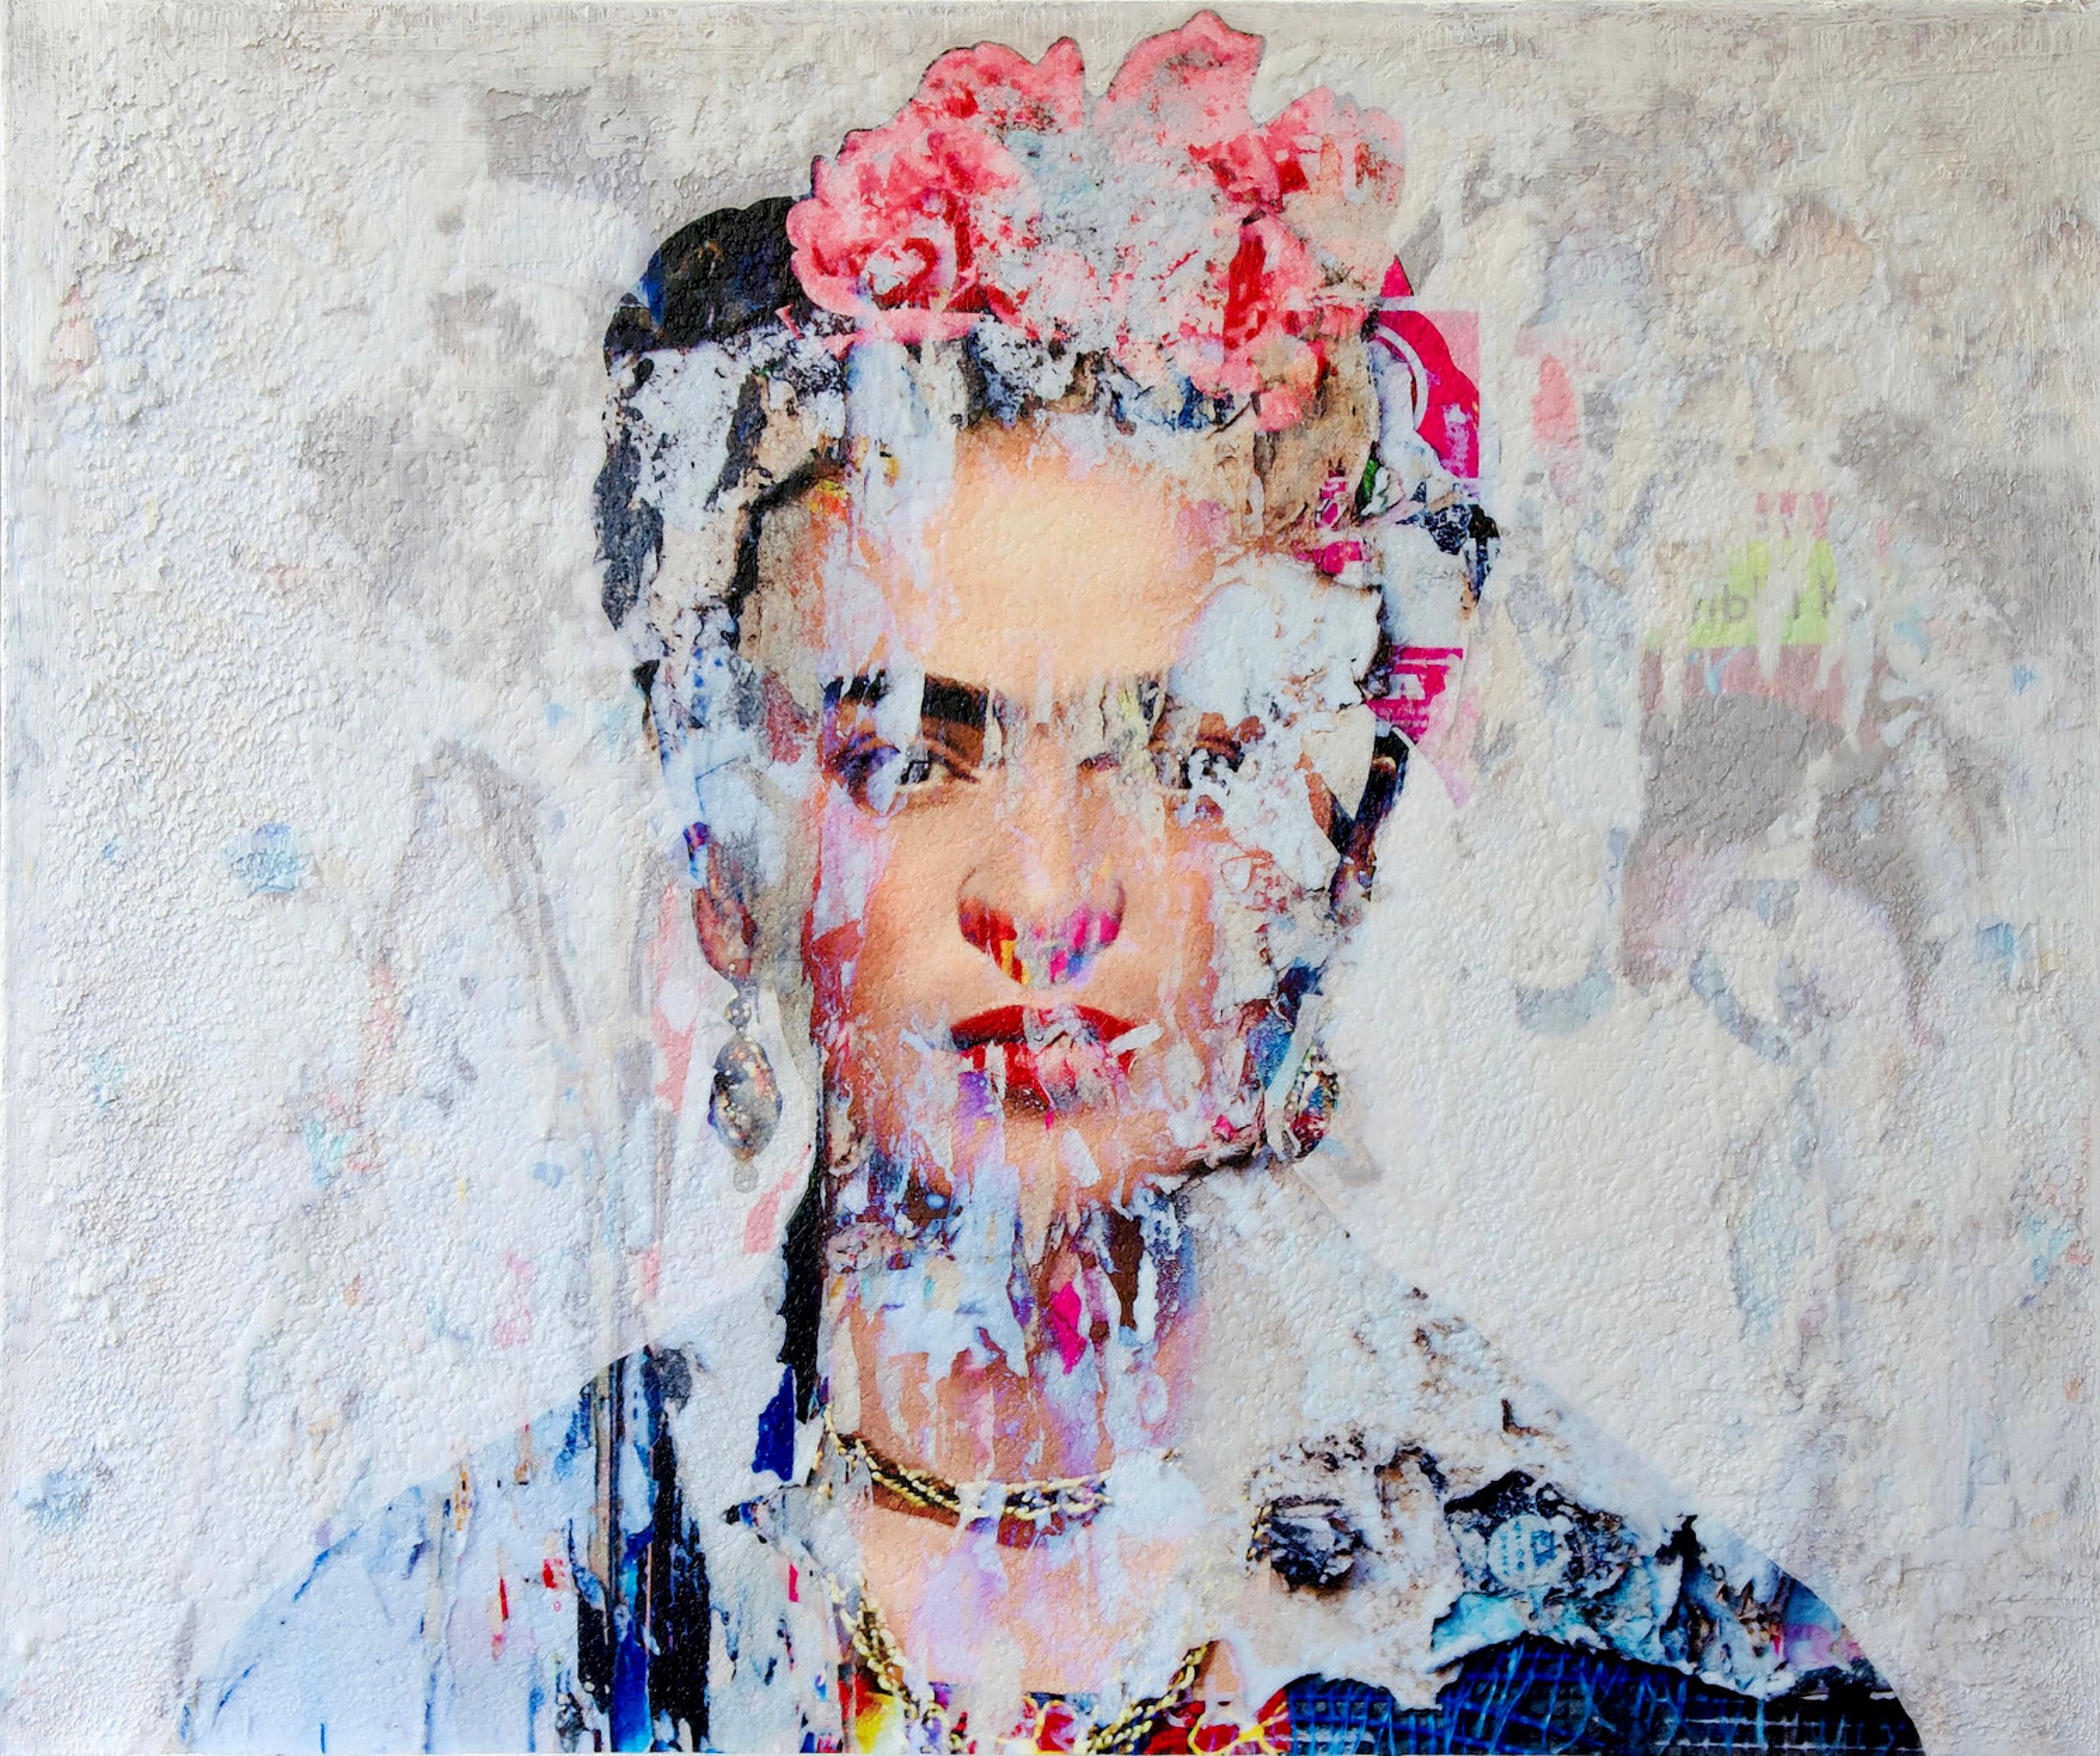 Frida Kahlo" di Karin Vermeer è una combinazione ed elaborazione digitale di fotografie, dipinti e collage in nuove opere originali a colori.